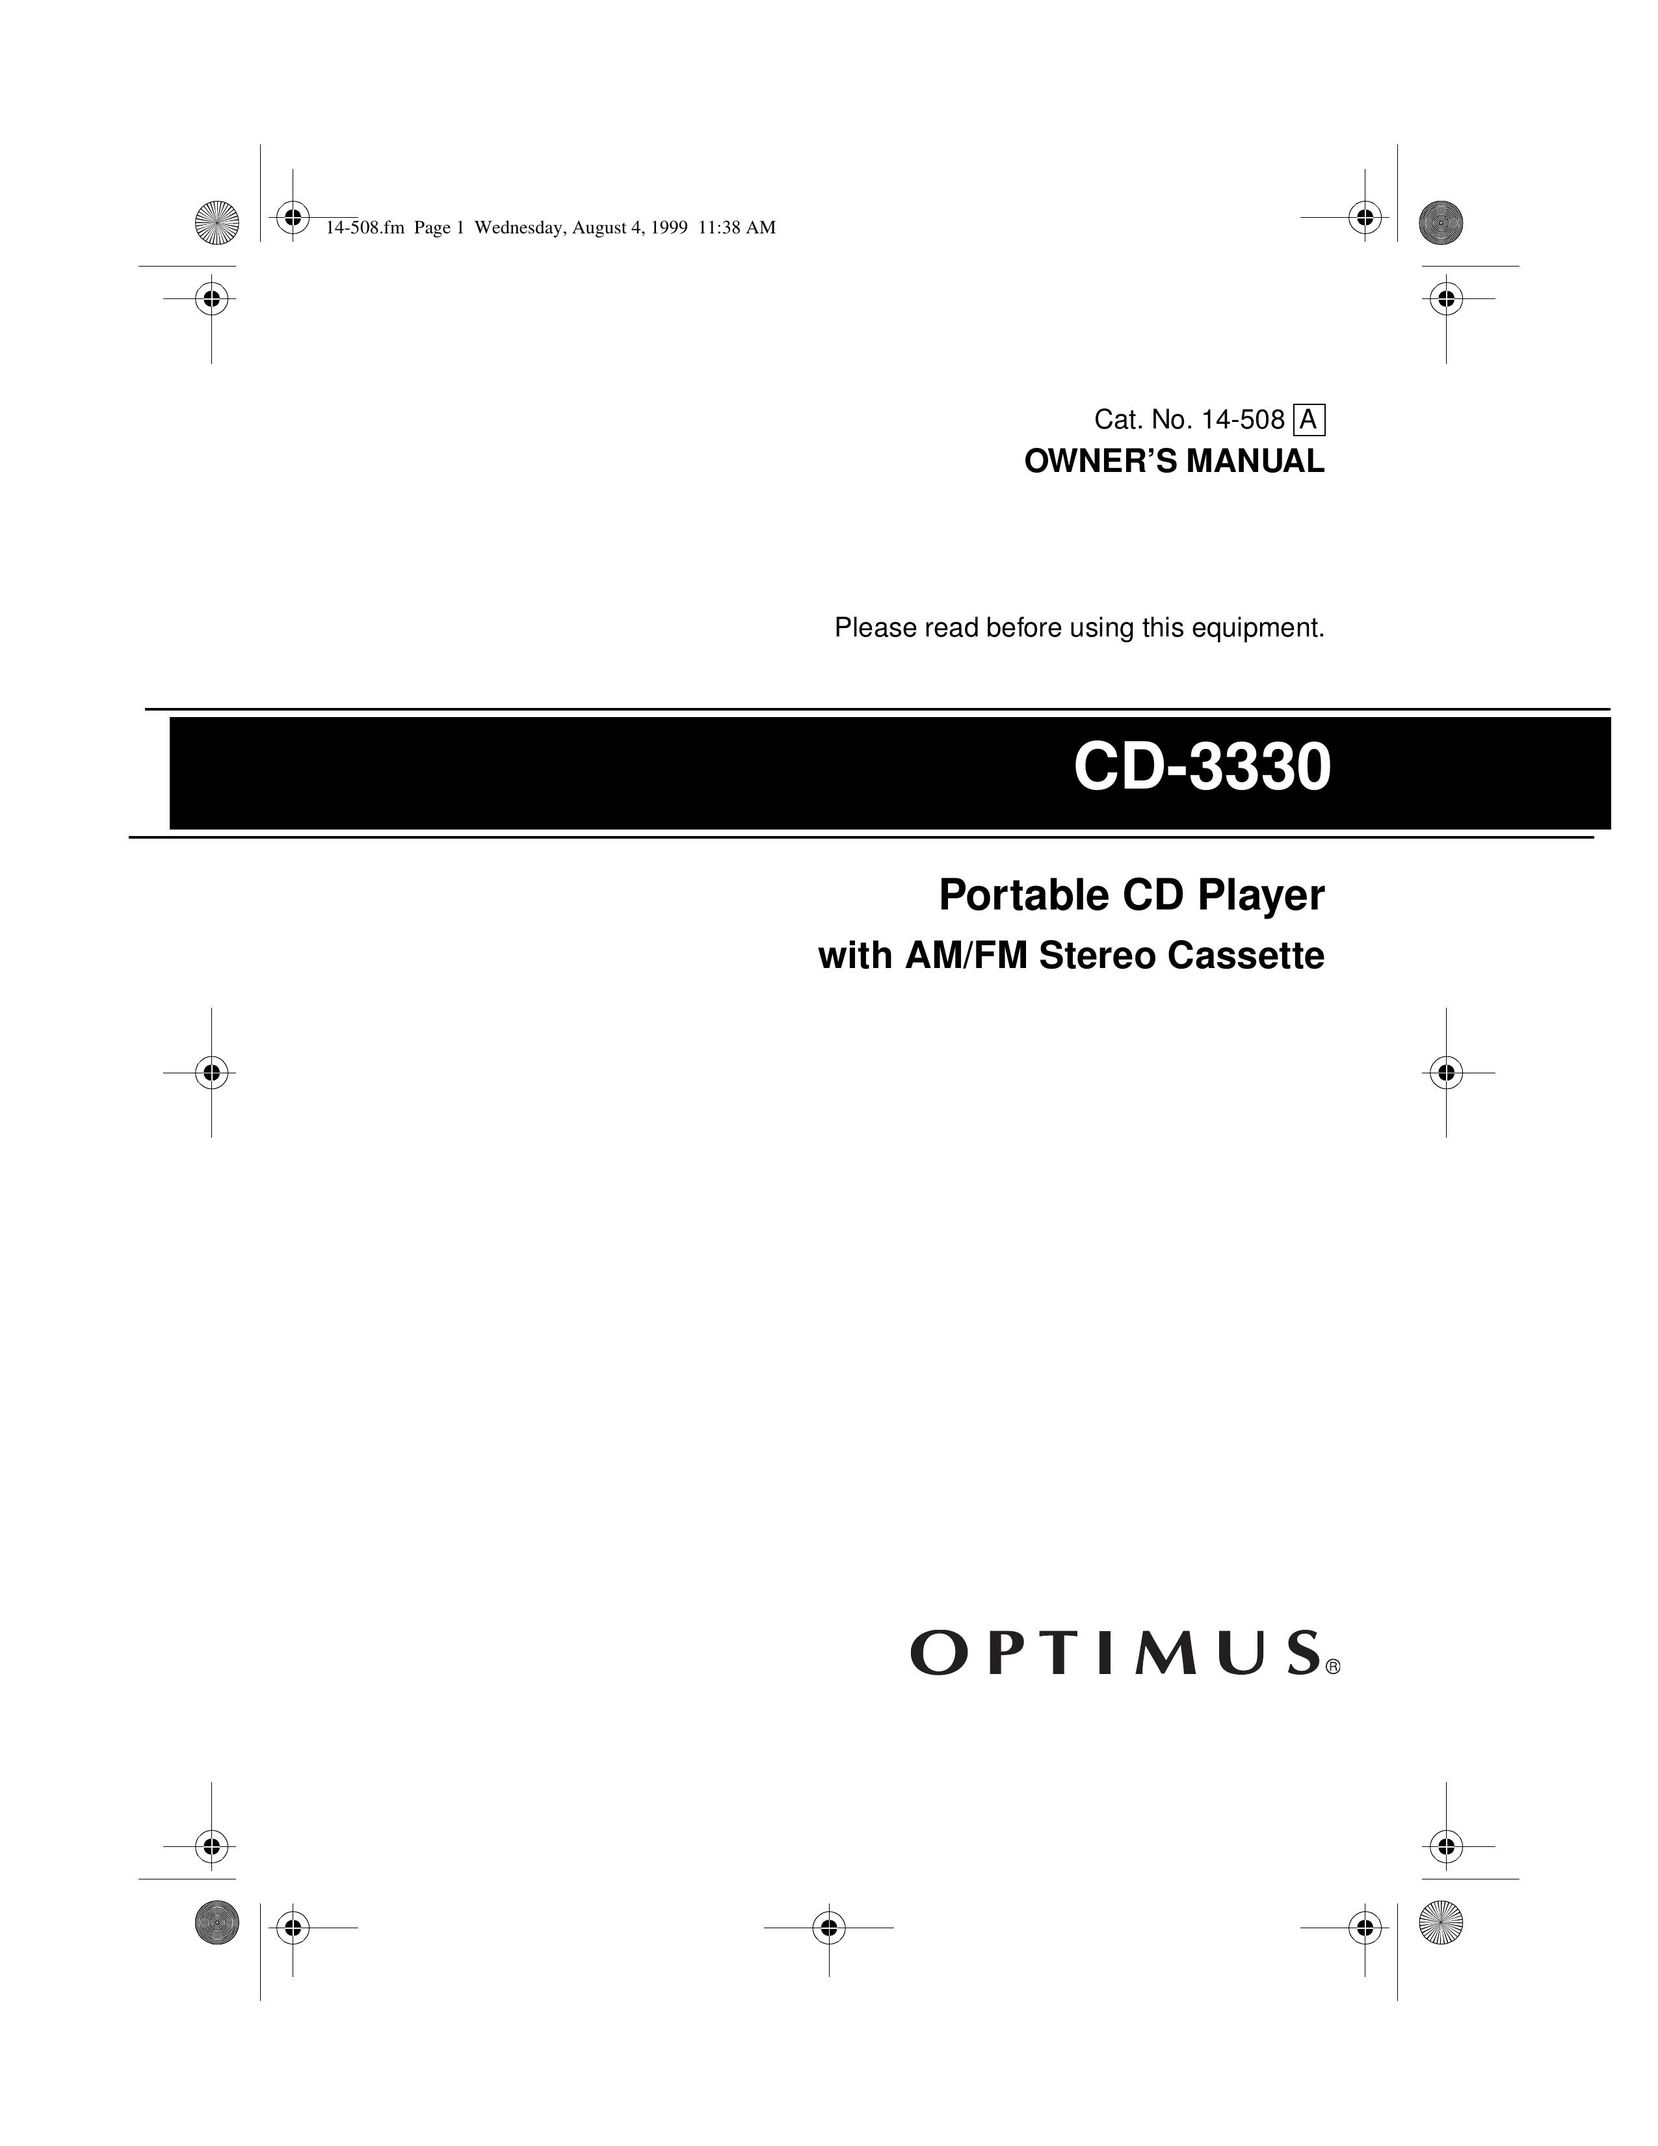 Optimus CD-3330 Portable CD Player User Manual